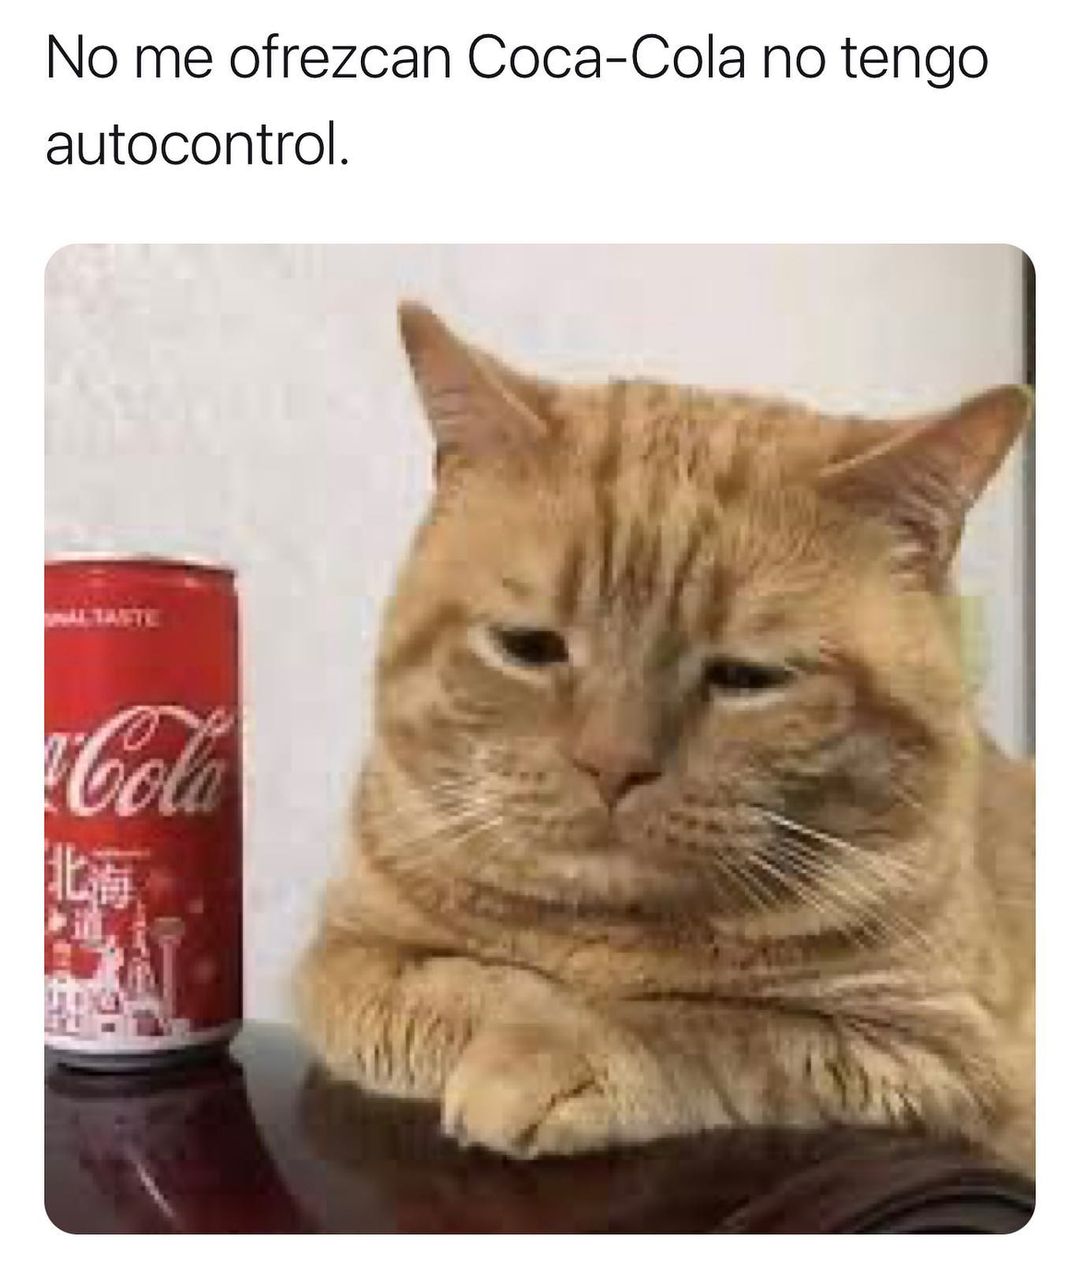 No me ofrezcan Coca-Cola no tengo autocontrol.